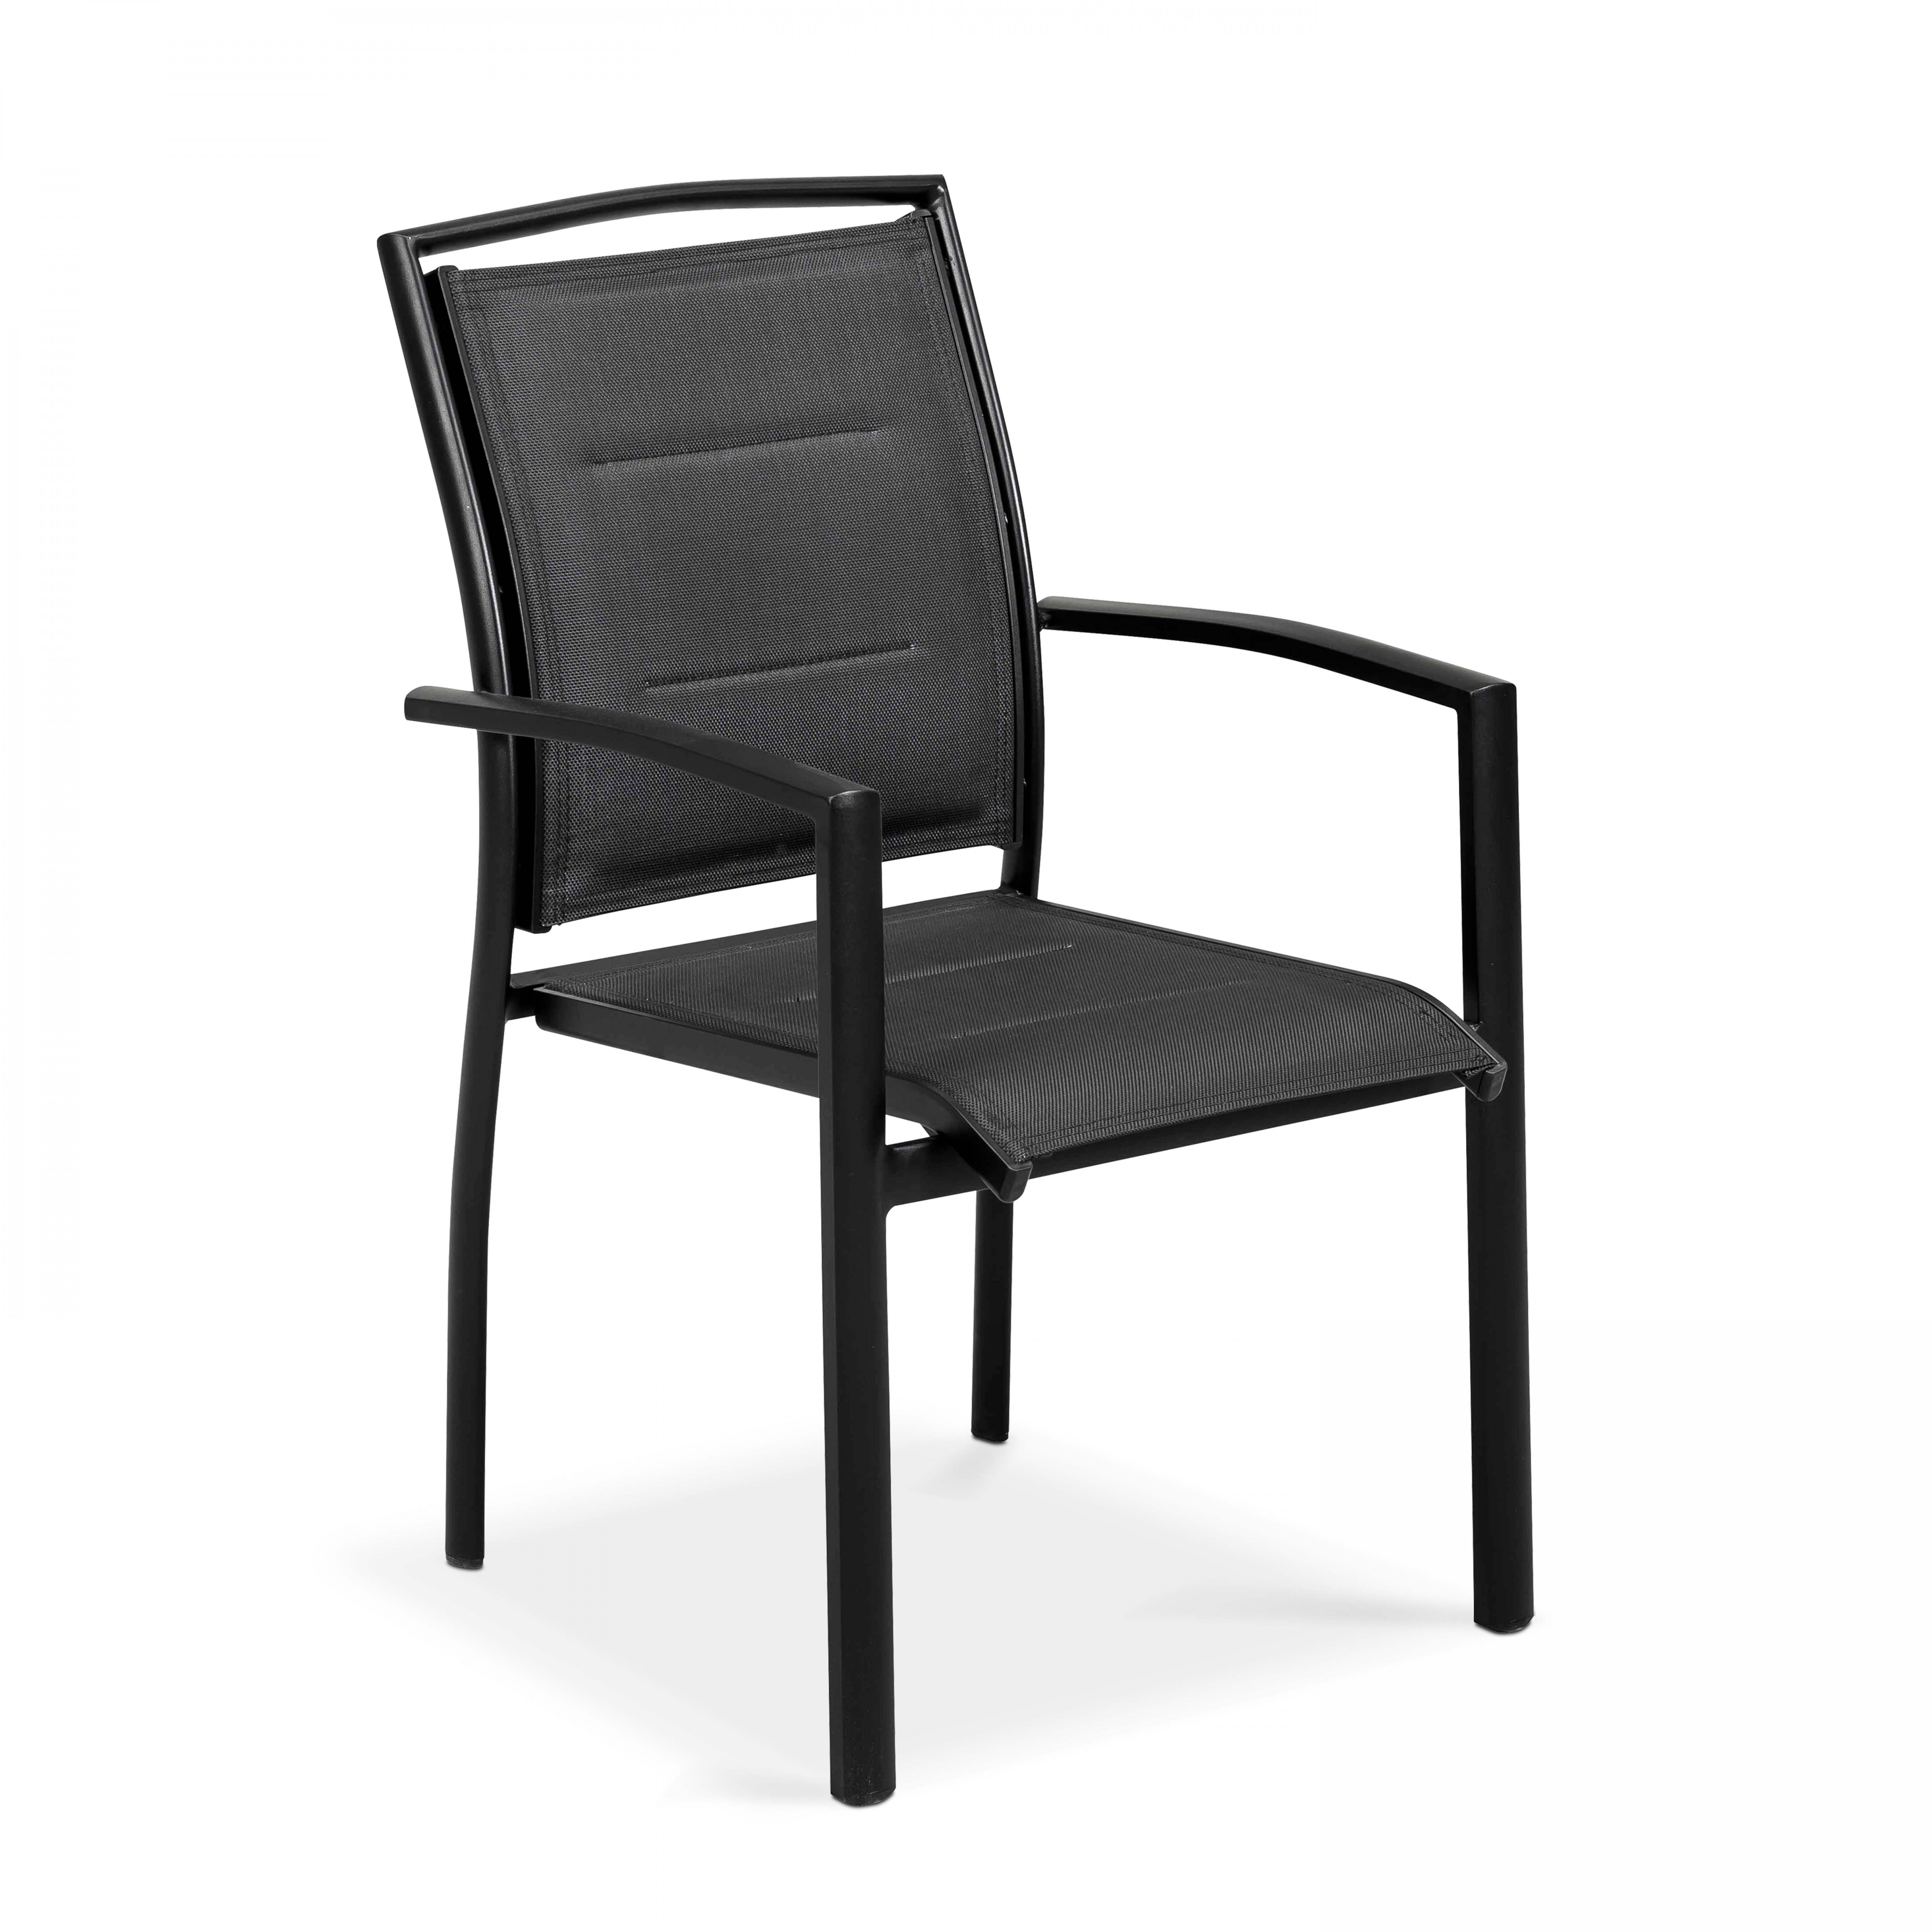 2 chaises de jardin avec accoudoirs noires en aluminium et textilène